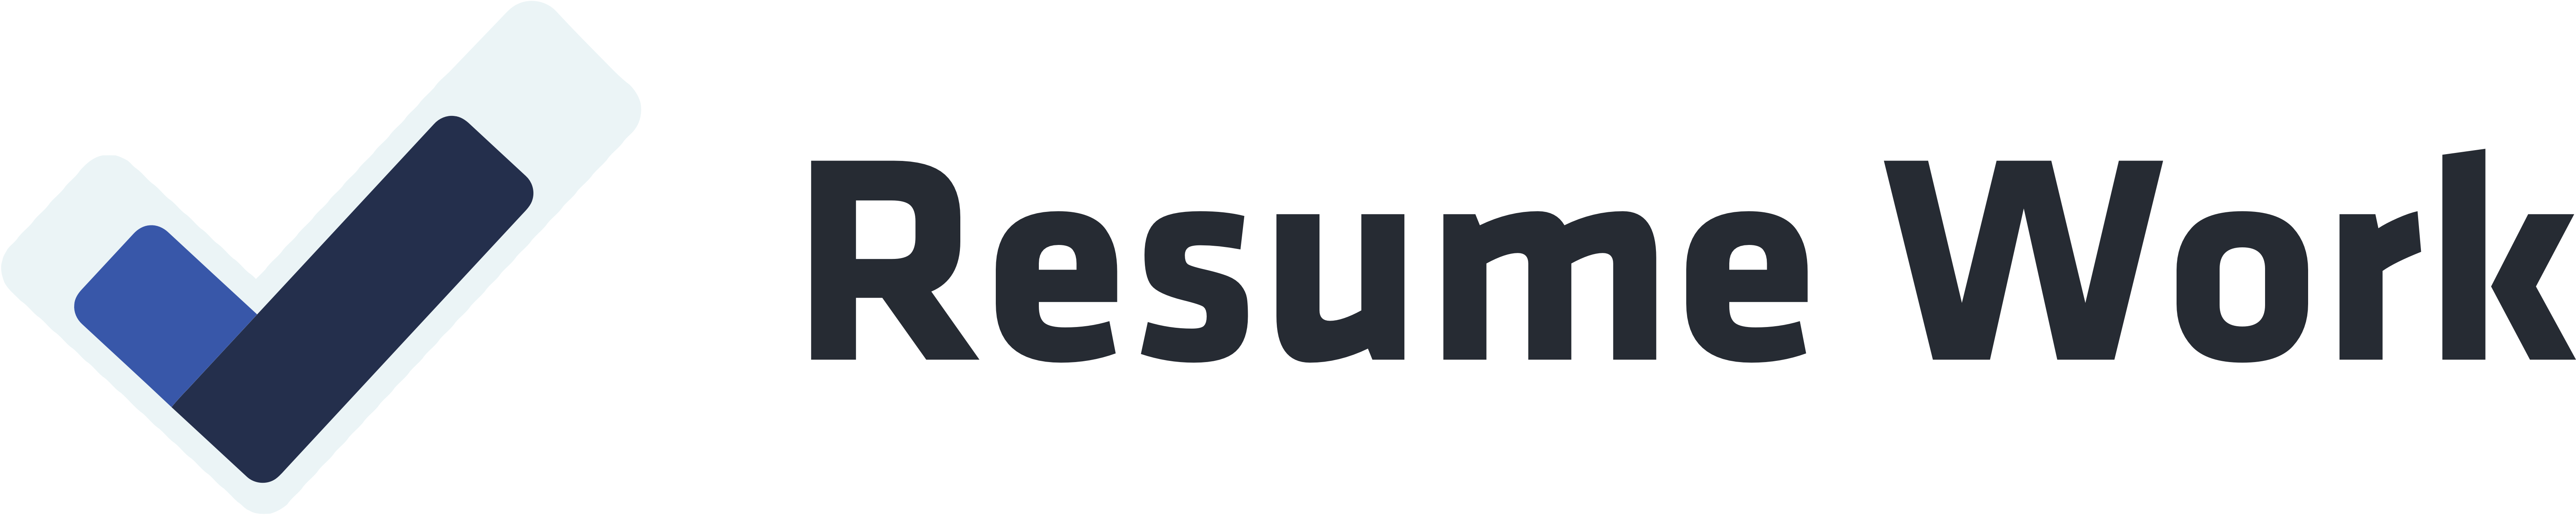 Resume Work Logo